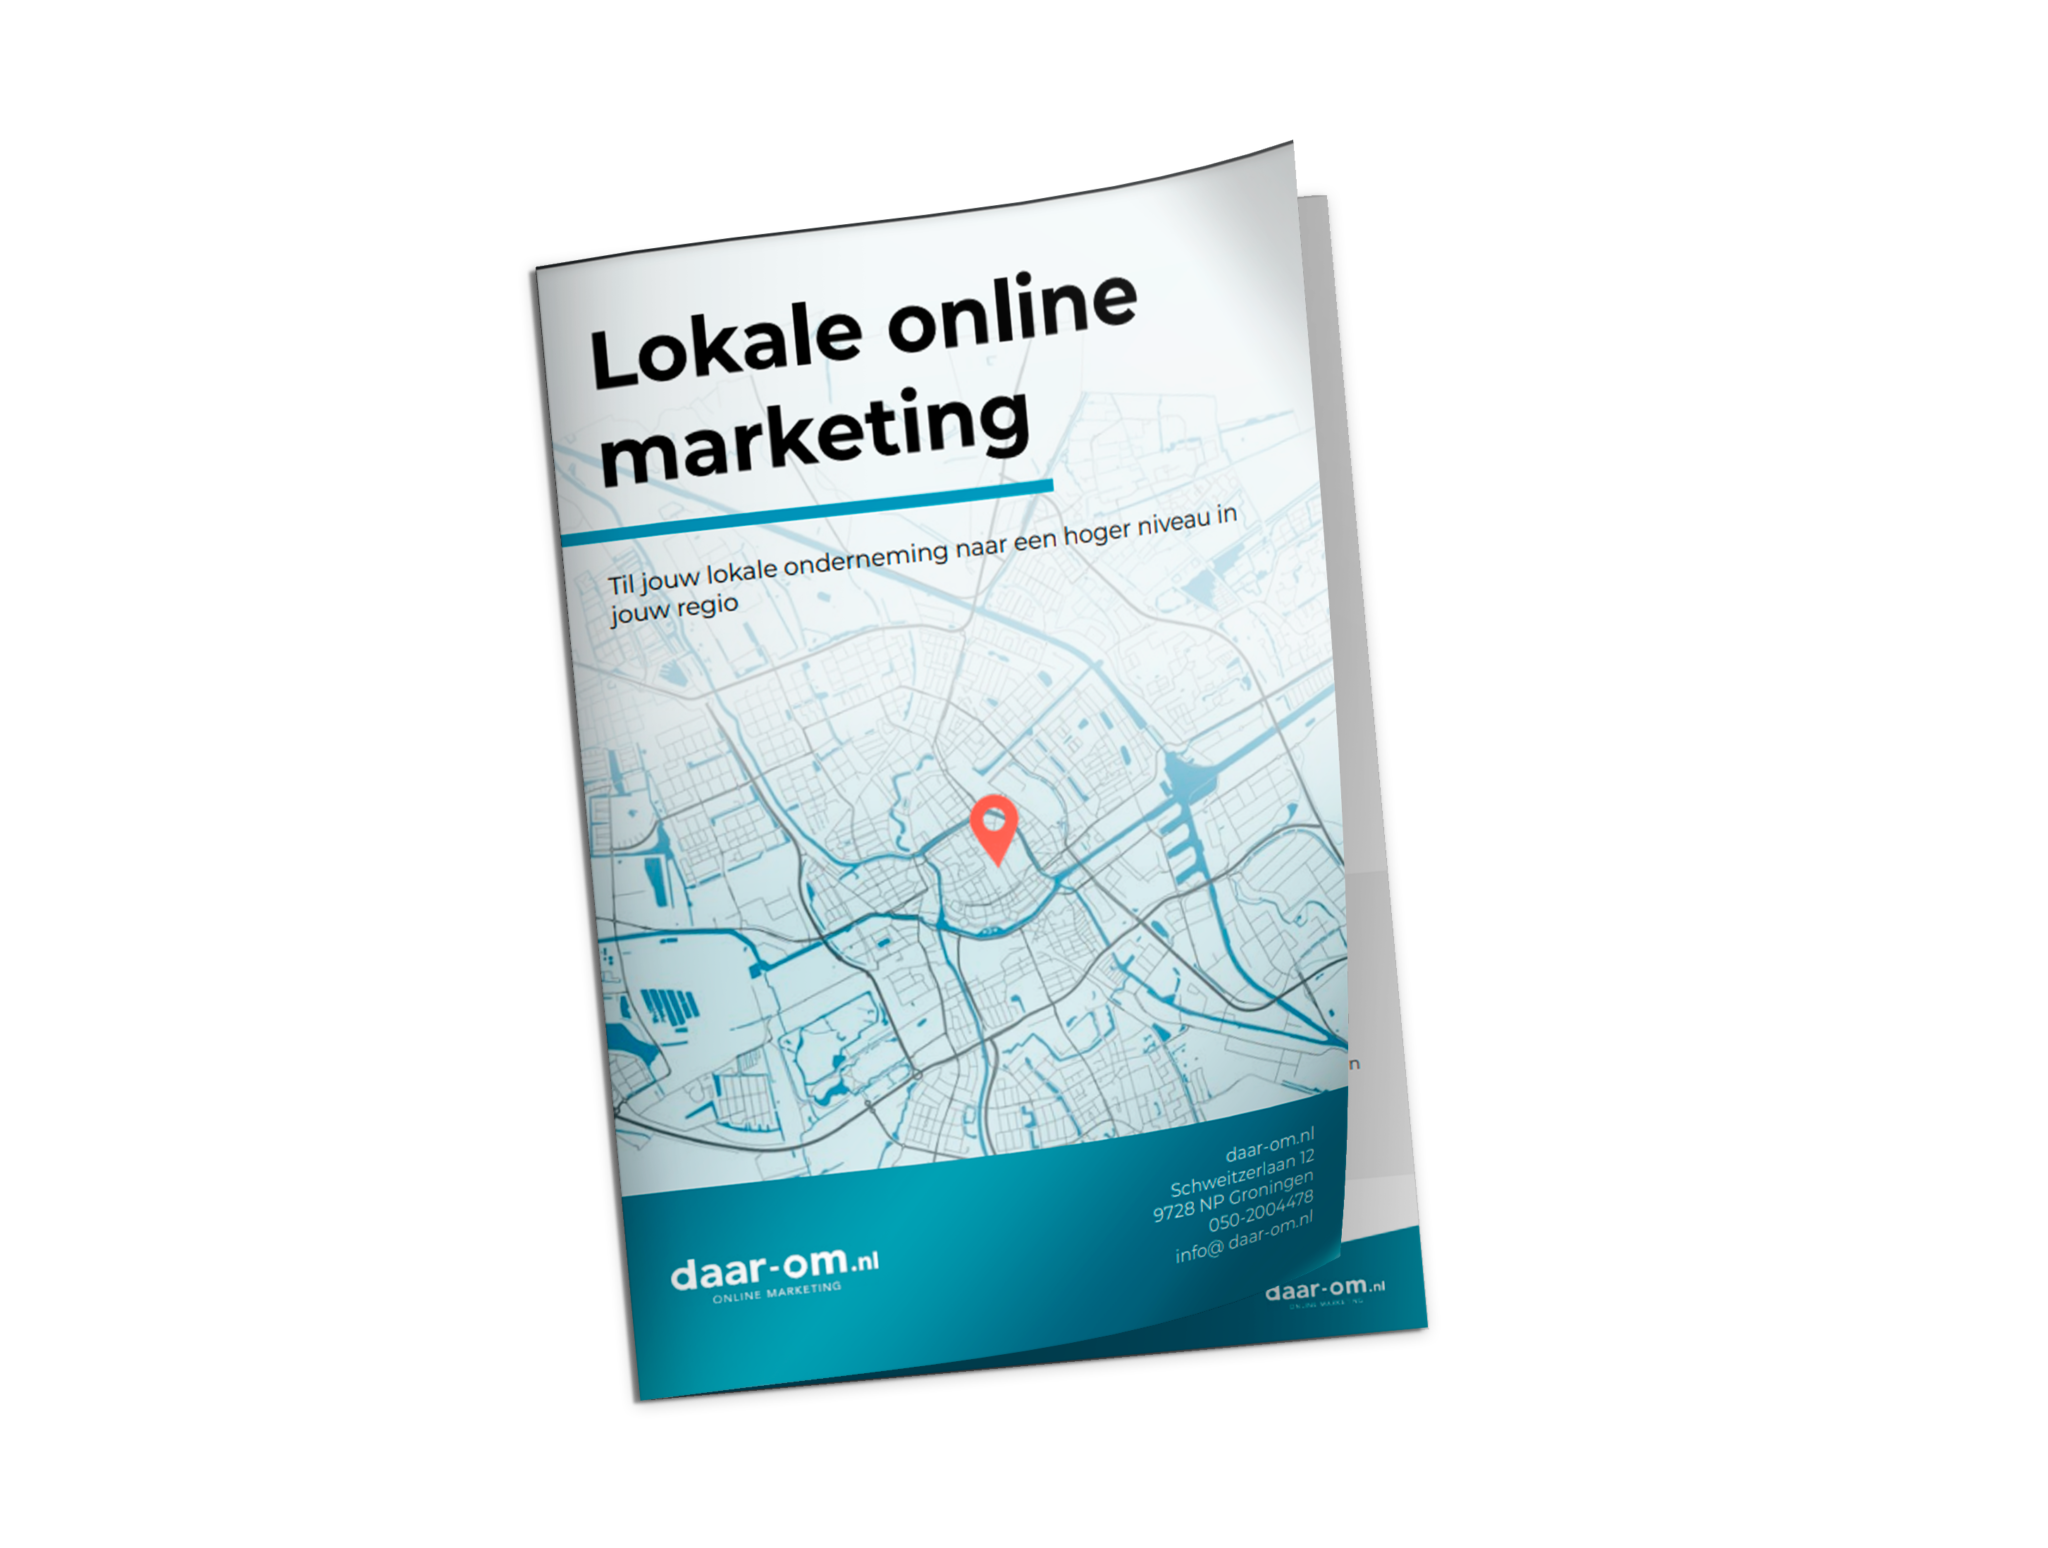 lokale-online-marketing